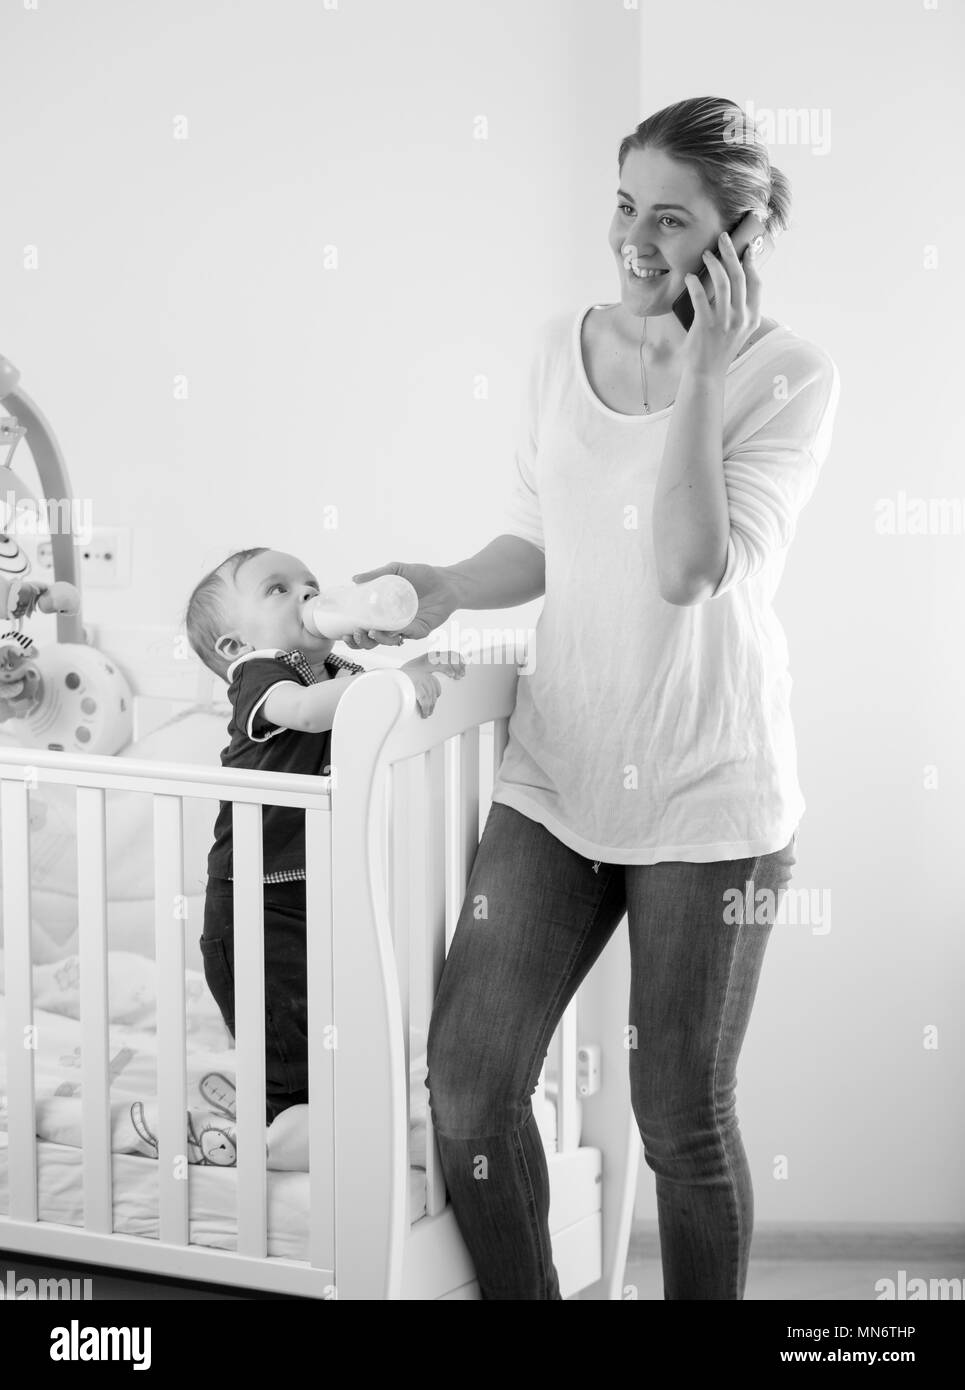 Schwarz-weiß Bild von jungen beschäftigte Frau im Gespräch per Telefon und geben Milch für Ihr Baby Sohn Stockfoto